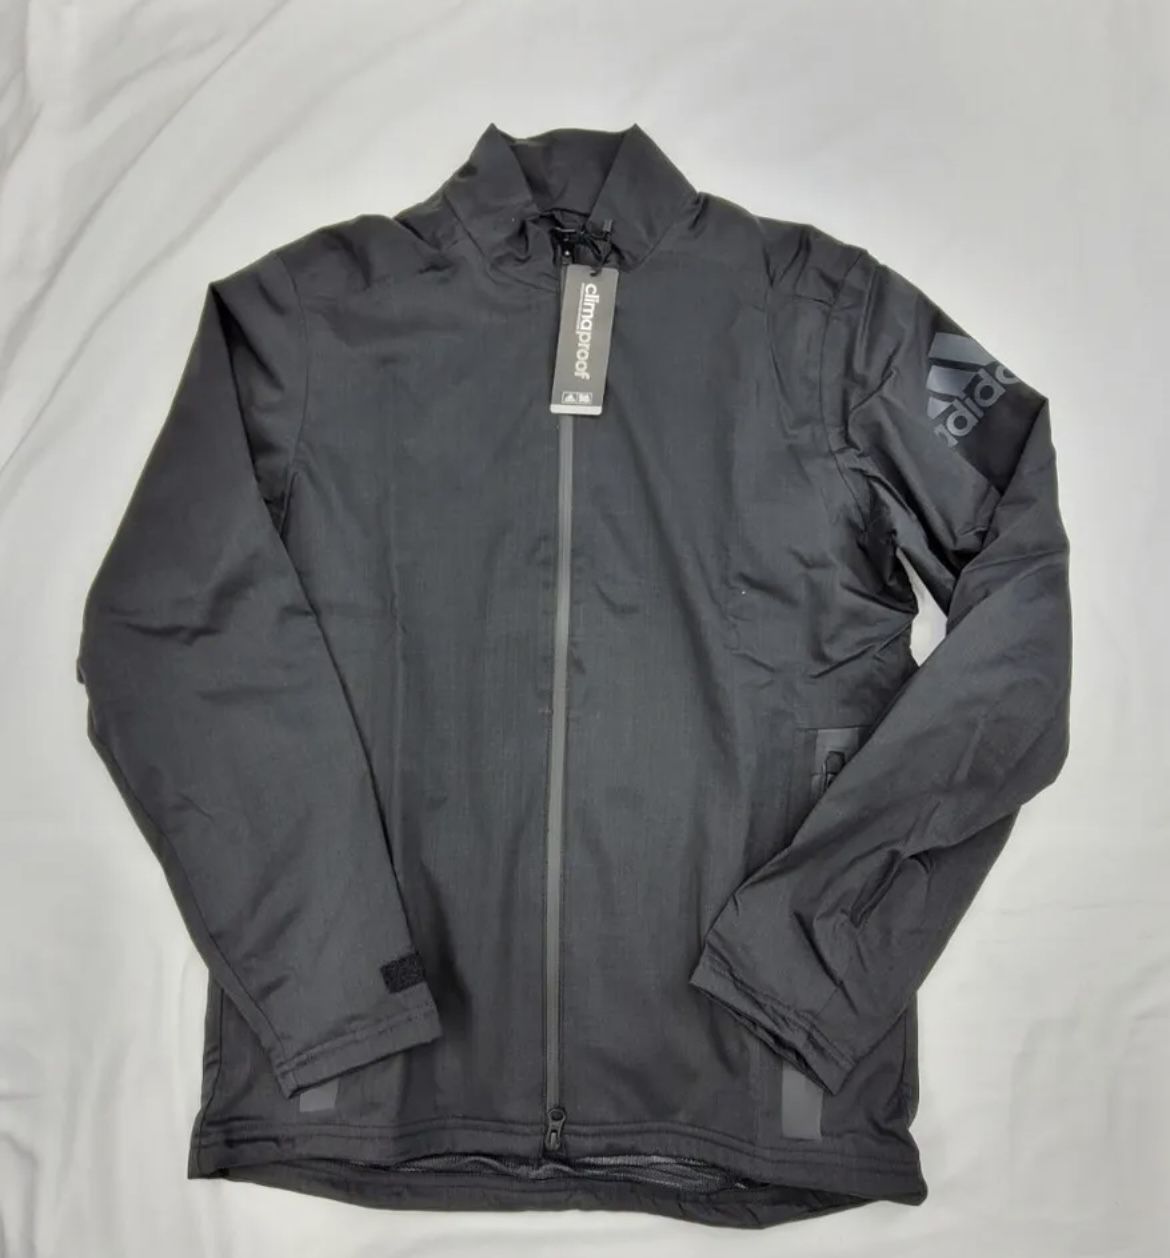 New Urban Street Wear Climaproof Rain Jacket Black Men's for in Garden Grove, CA - OfferUp